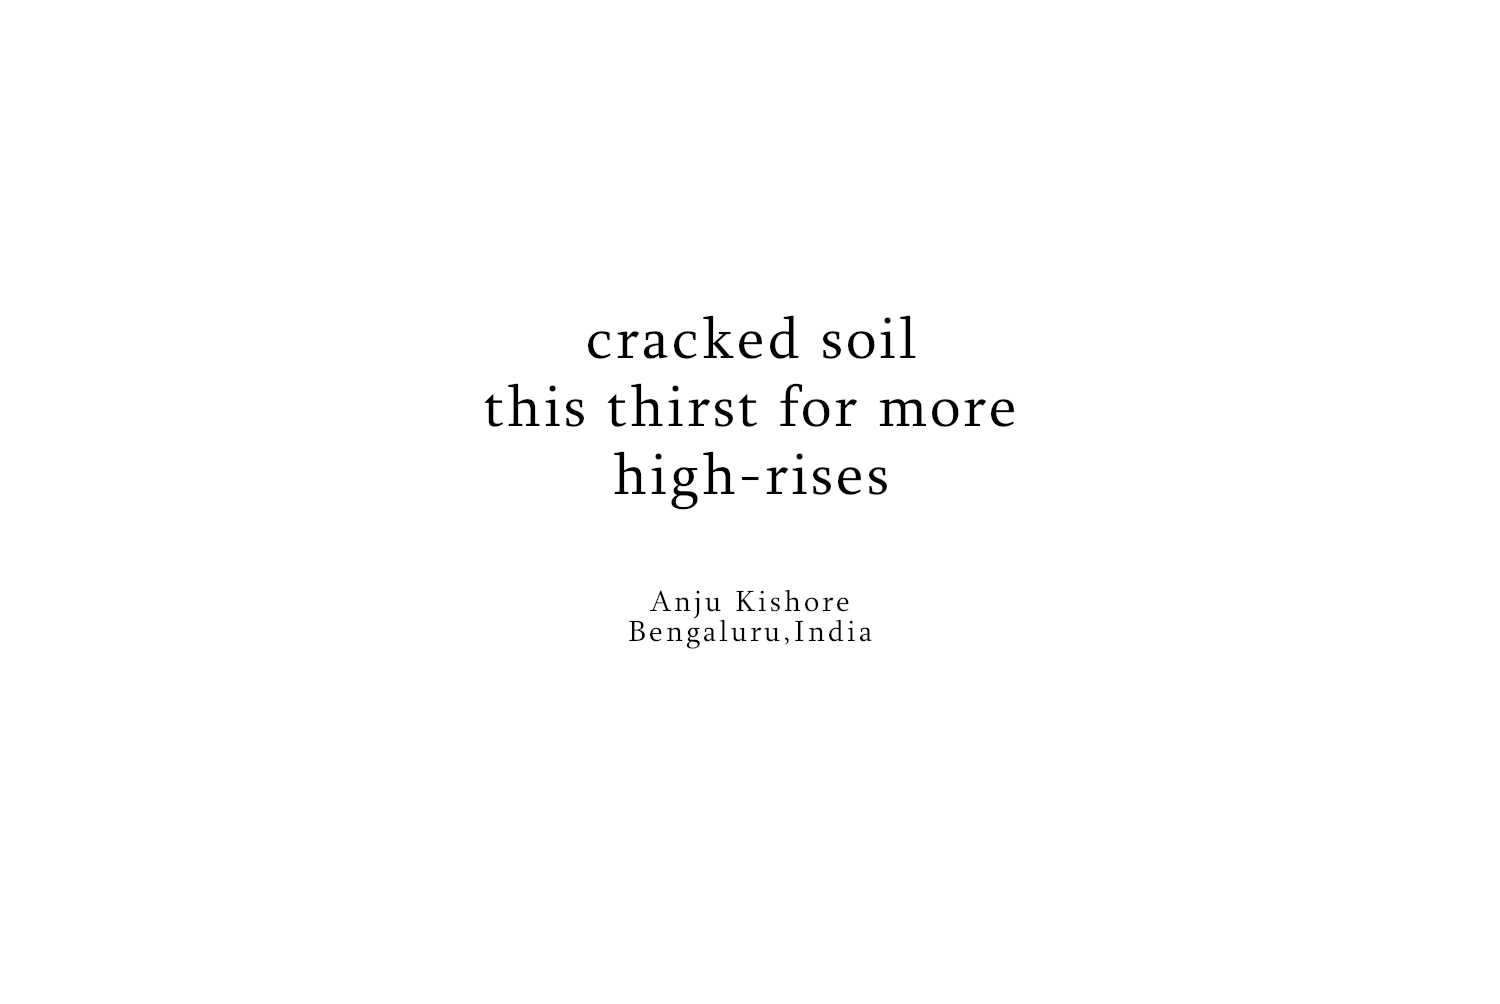 Anju Kishore - cracked soil